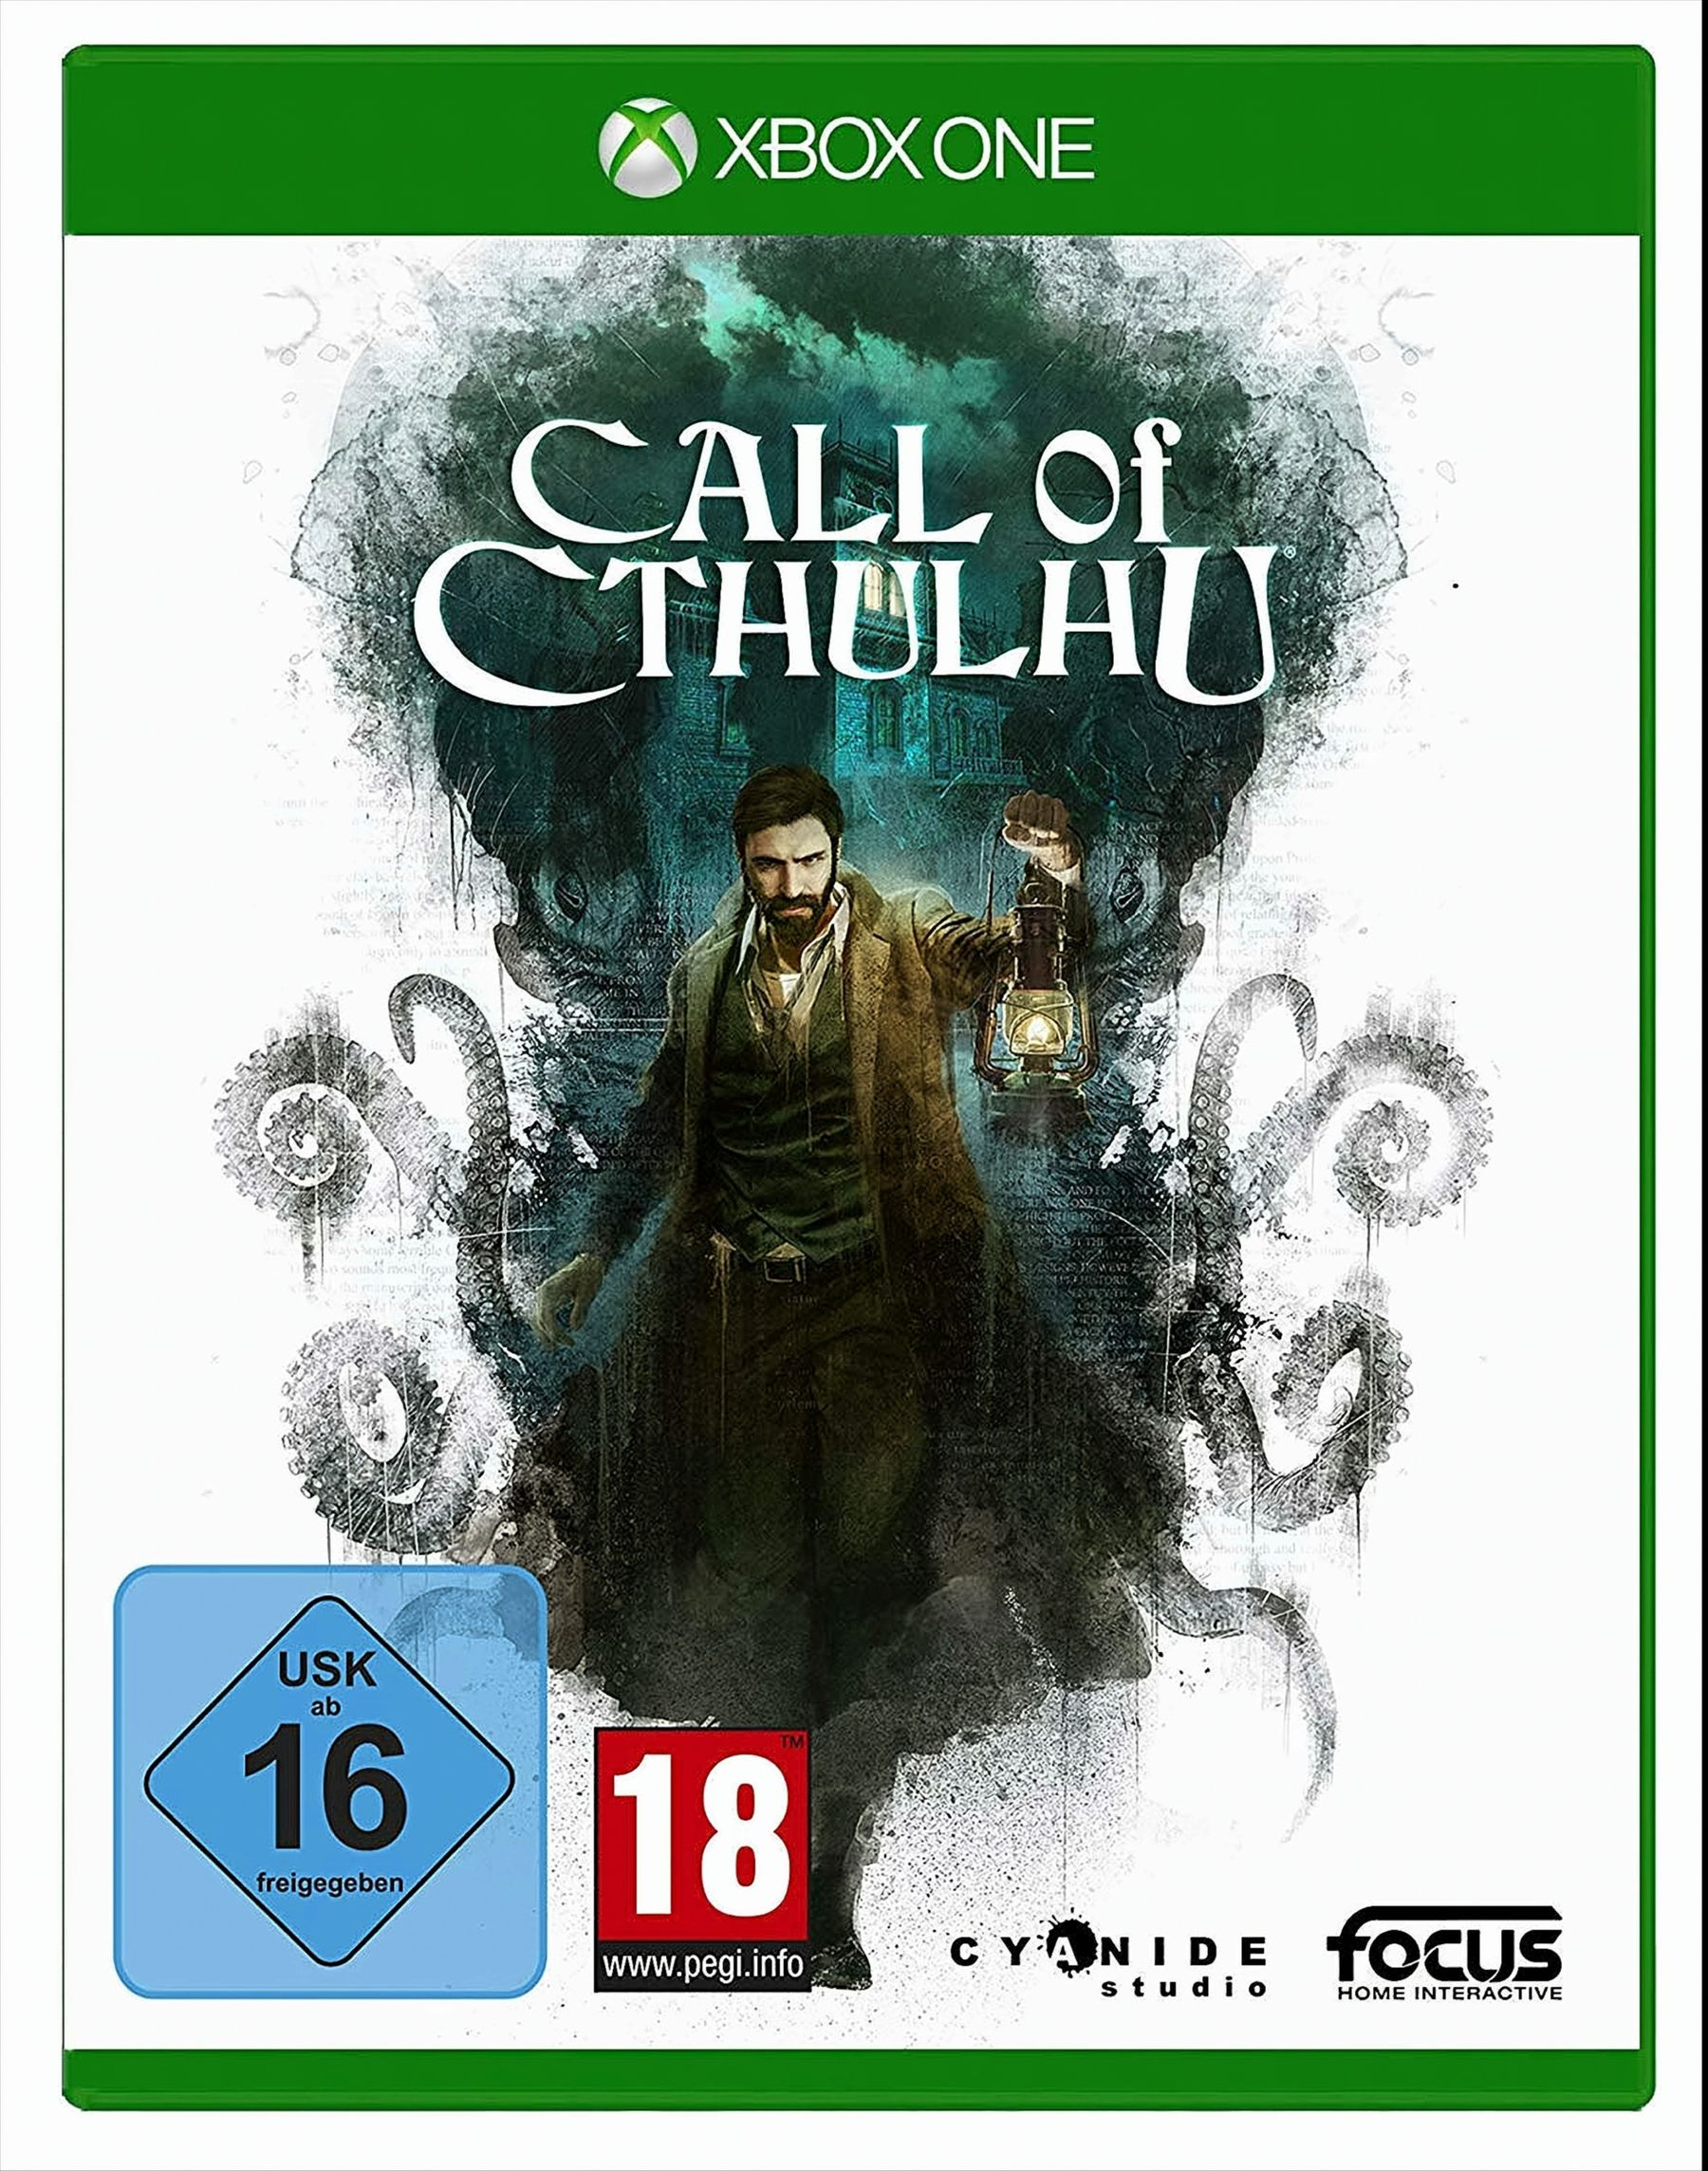 - Cthulhu One] Of [Xbox (XONE) Call